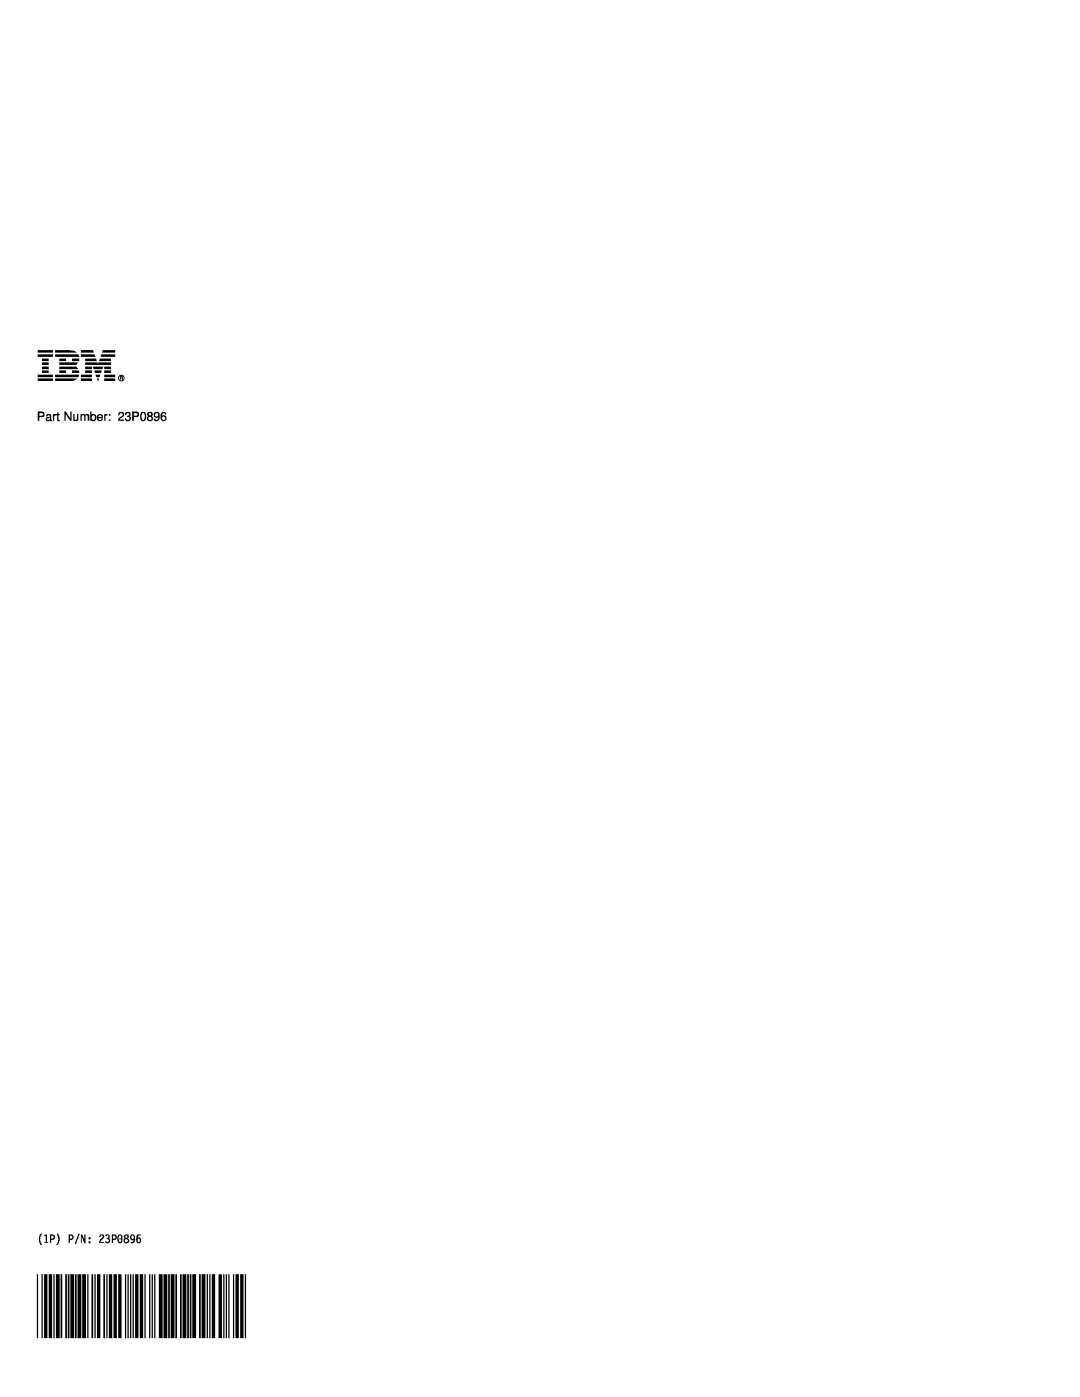 IBM A22M, A21M, A22P, A21P, A20M, MT 2631 manual Part Number 23P0896, 1P P/N 23P0896 